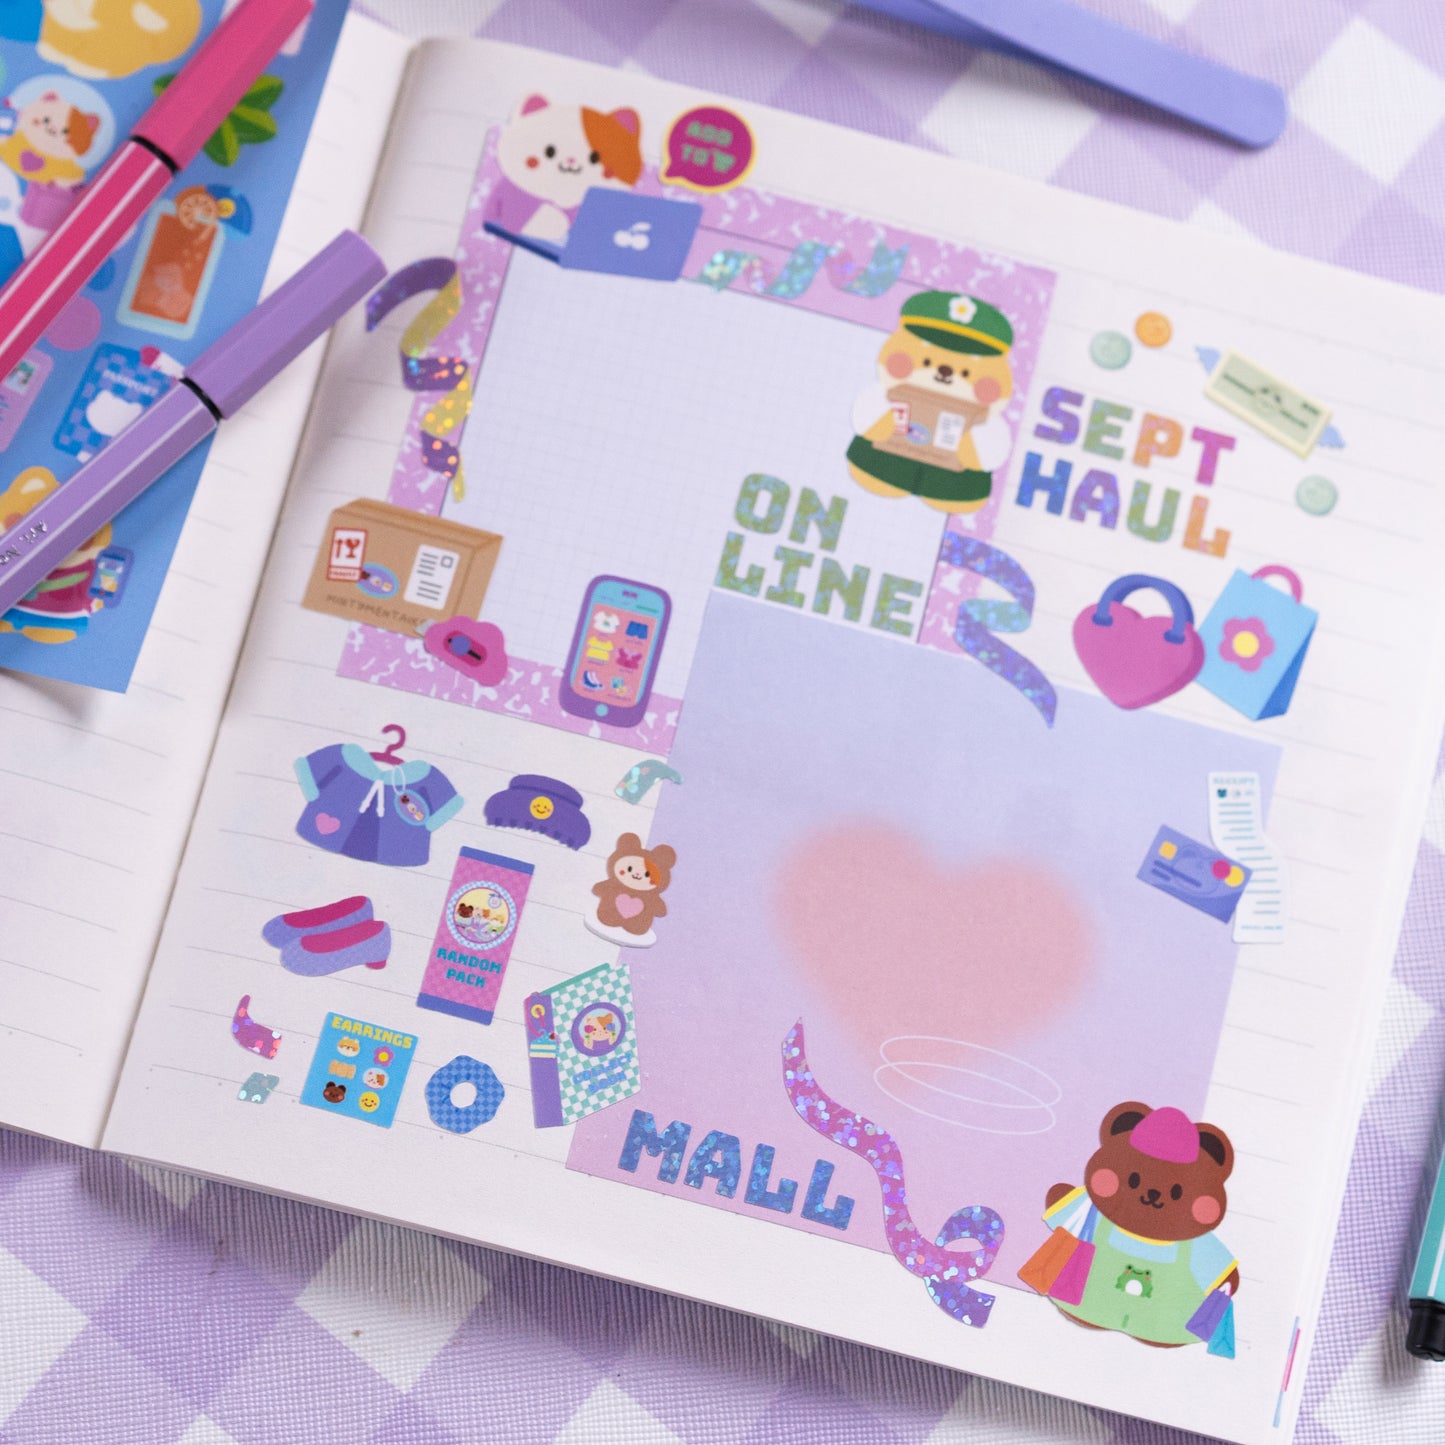 Shopping Haul Journal Sticker Sheet